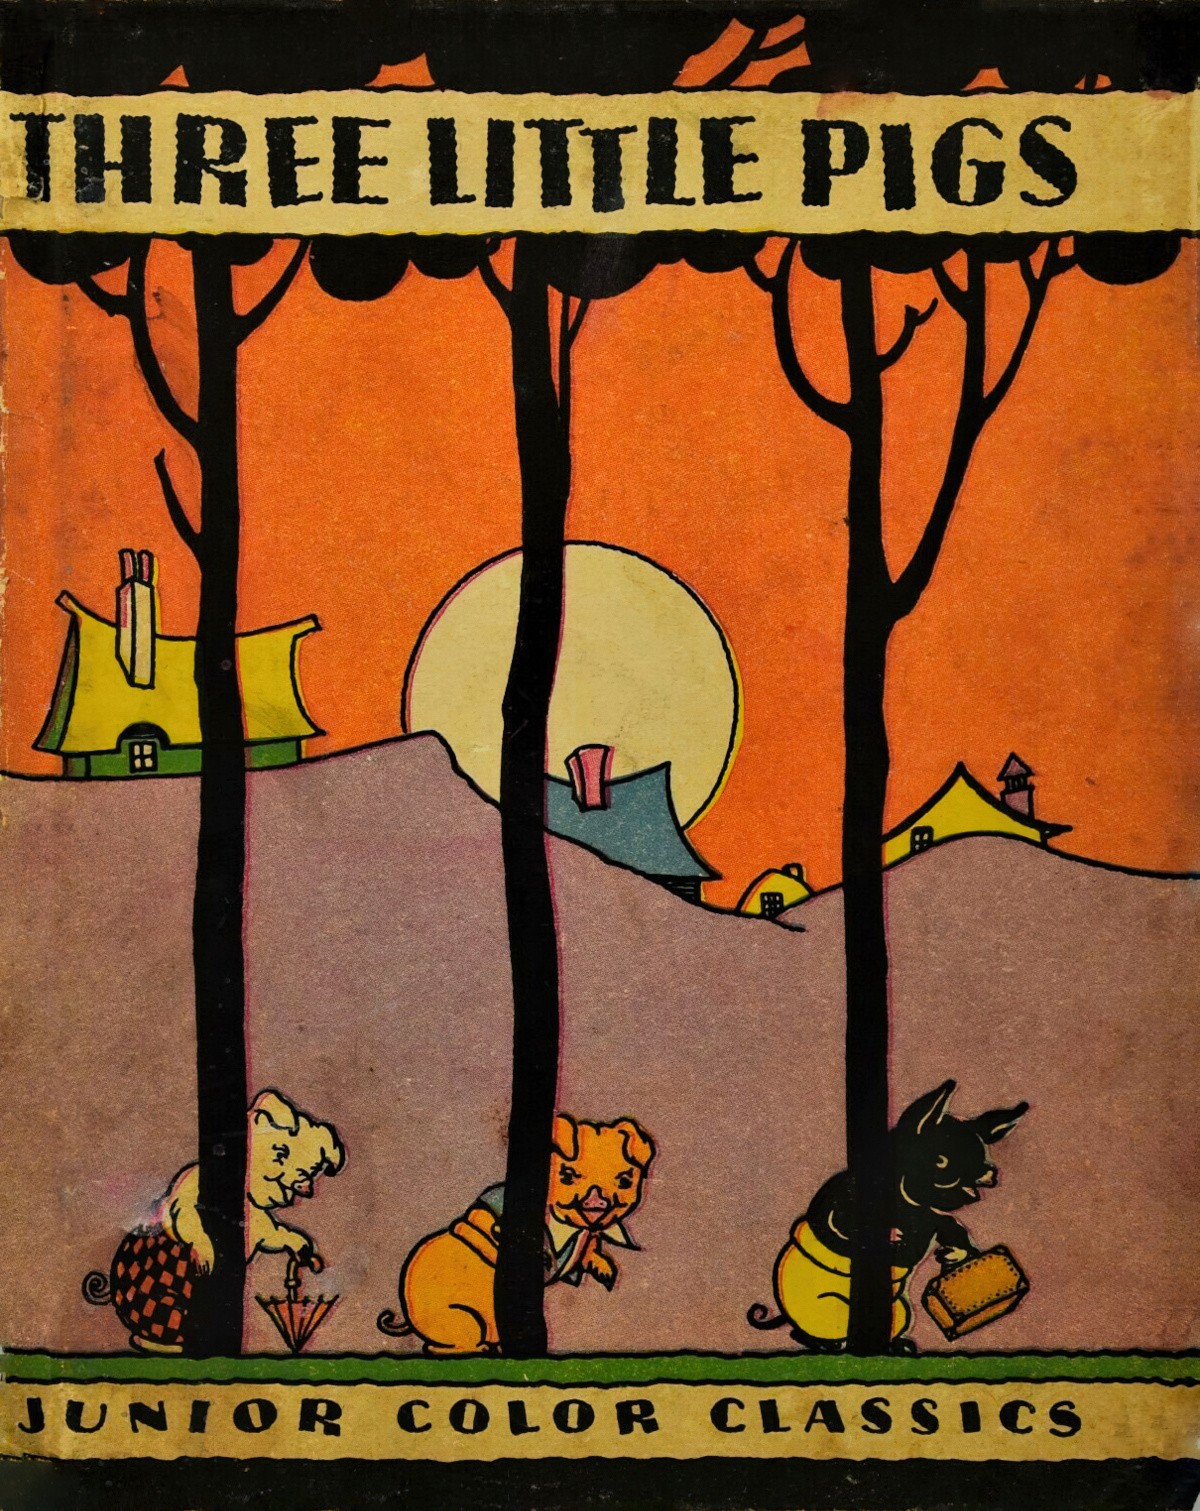 The Three Little Pigs Illustrated by Leonard Leslie Brooke Fairy Tale Analysis